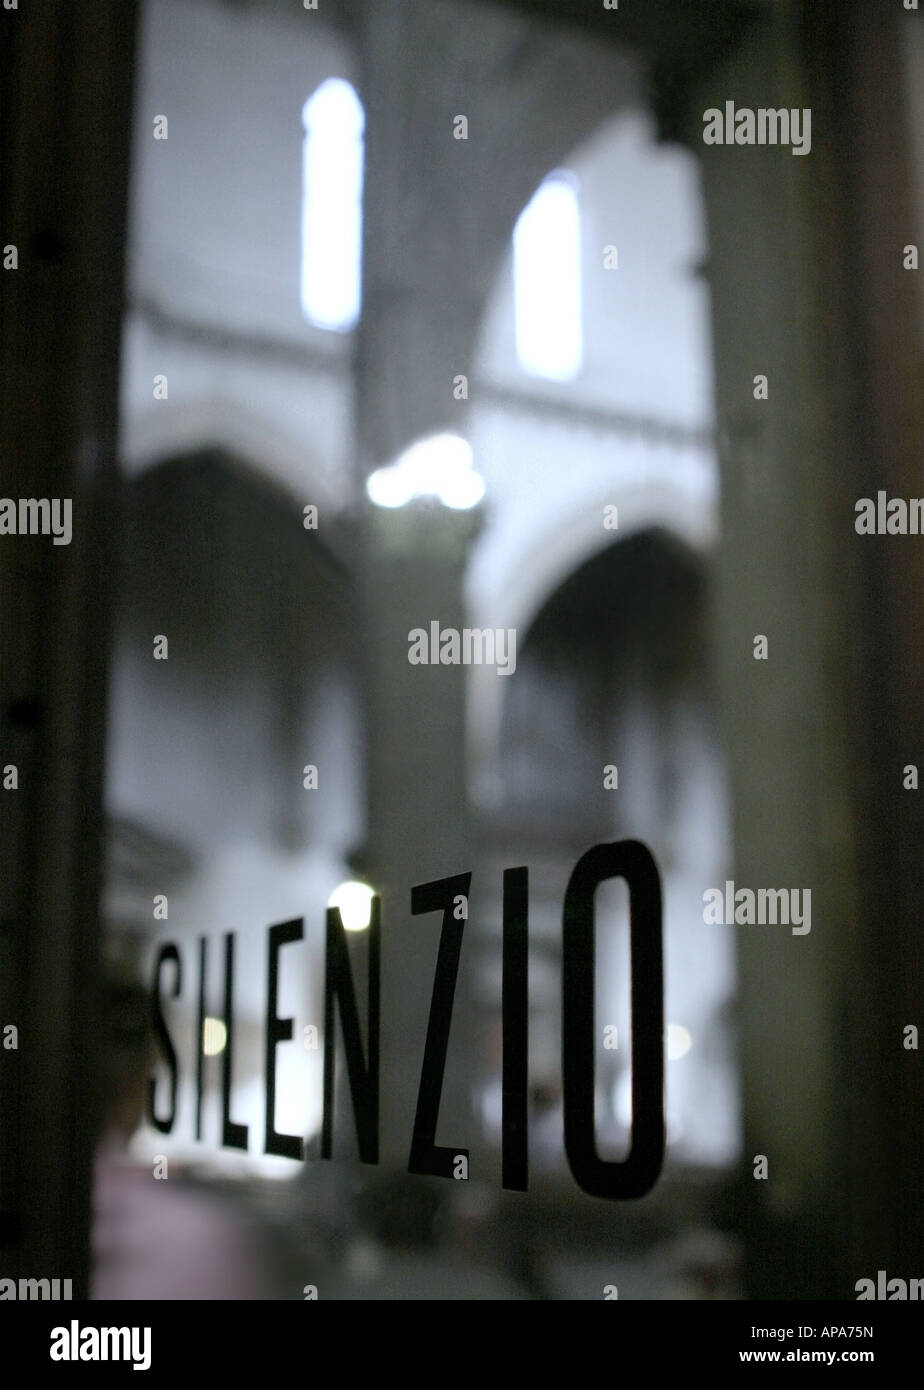 Silenzio - escrito en una puerta de cristal en la catedral de Santa Maria en Florencia | Schrift auf einer Glastür in der Kathedrale zu Florenz Foto de stock